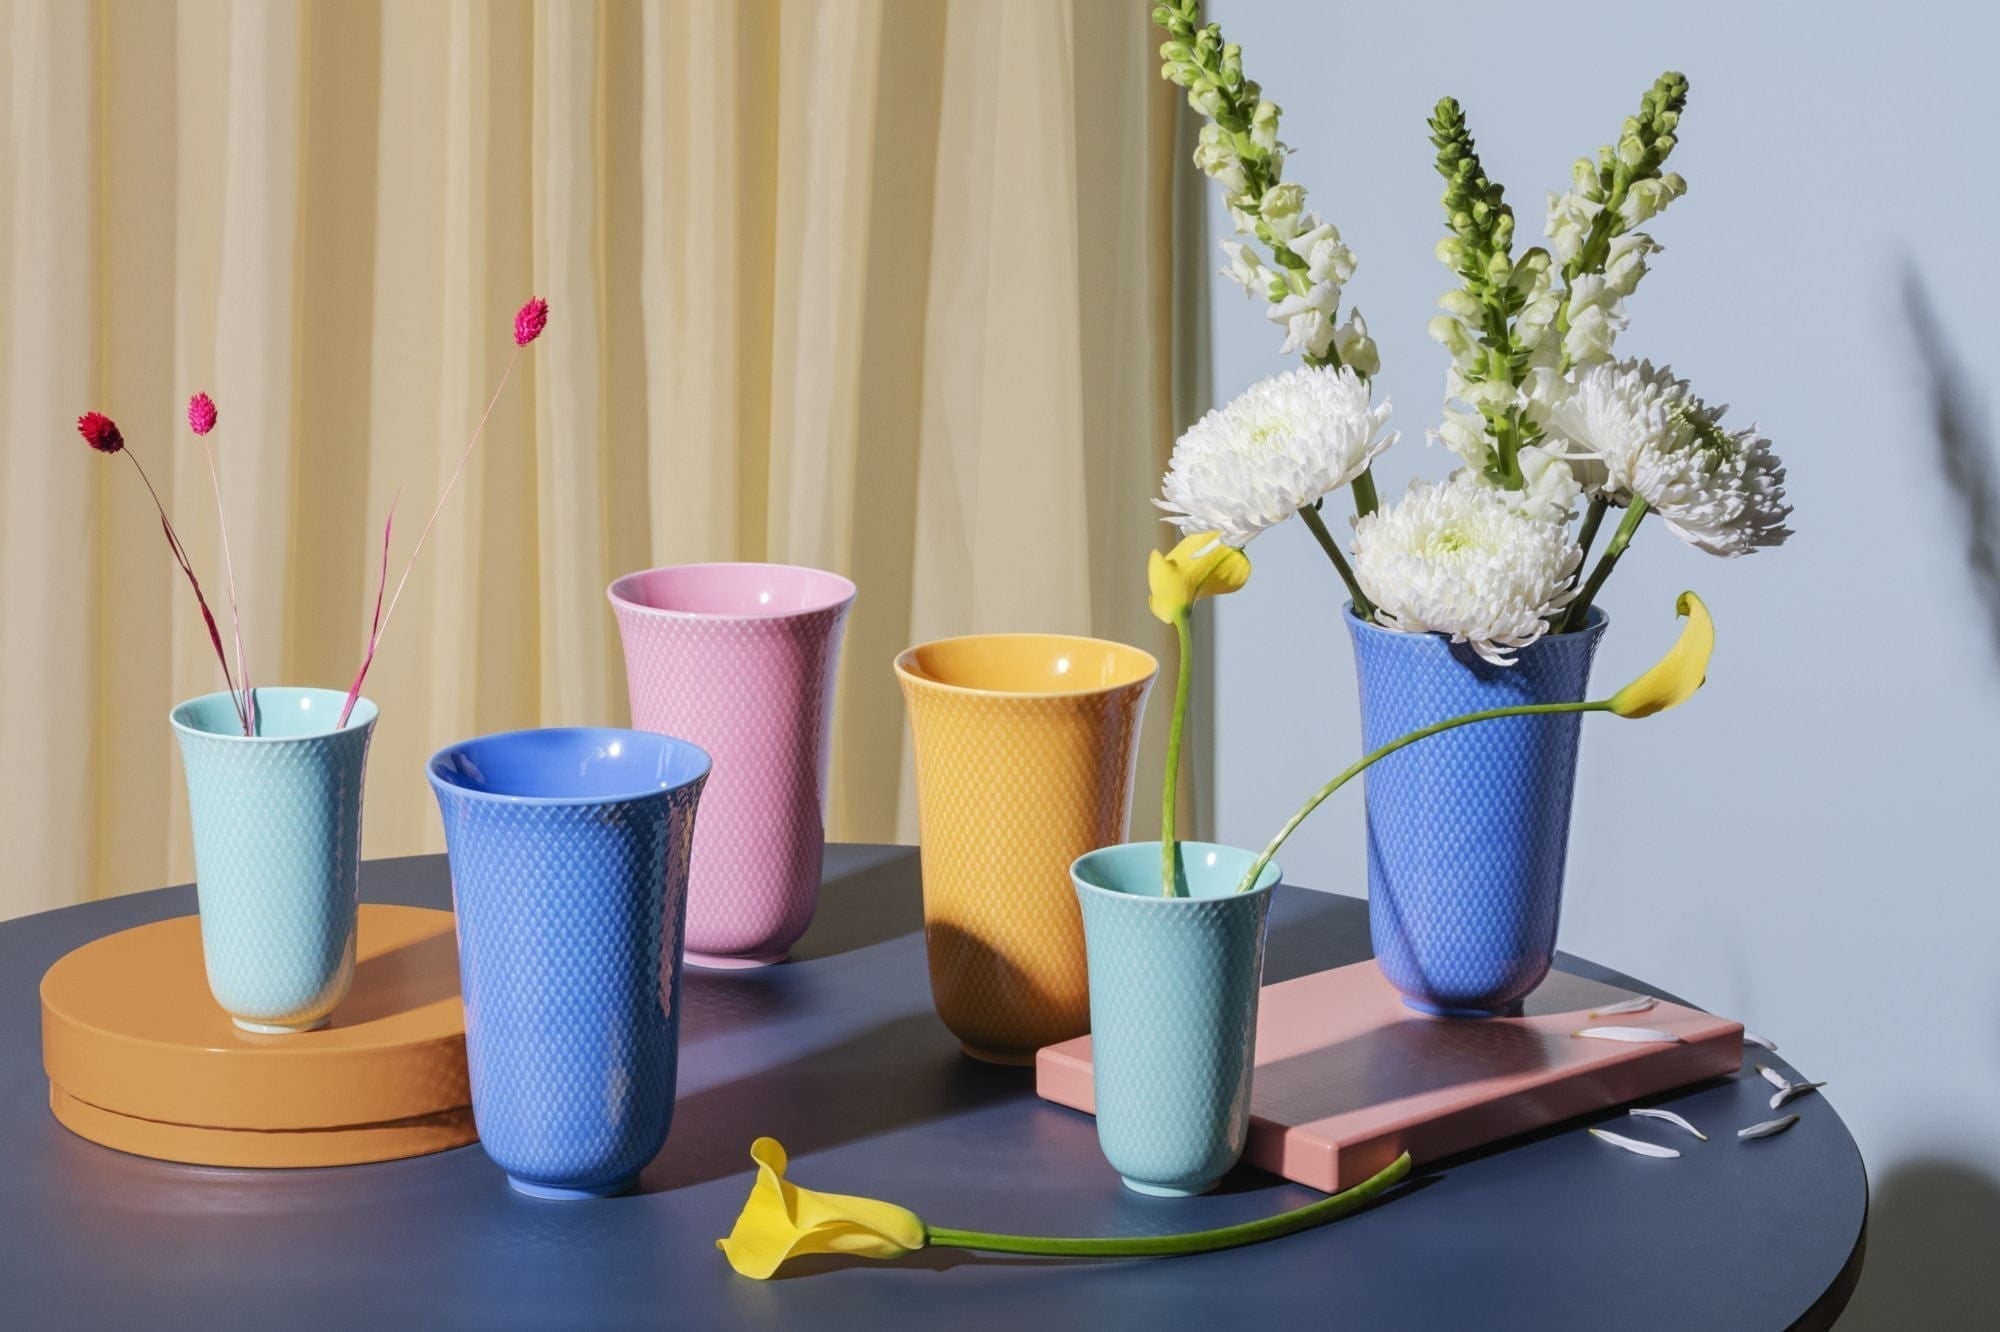 Lyngby Porcelæn Rhombe barevná váza 15 cm, modrá